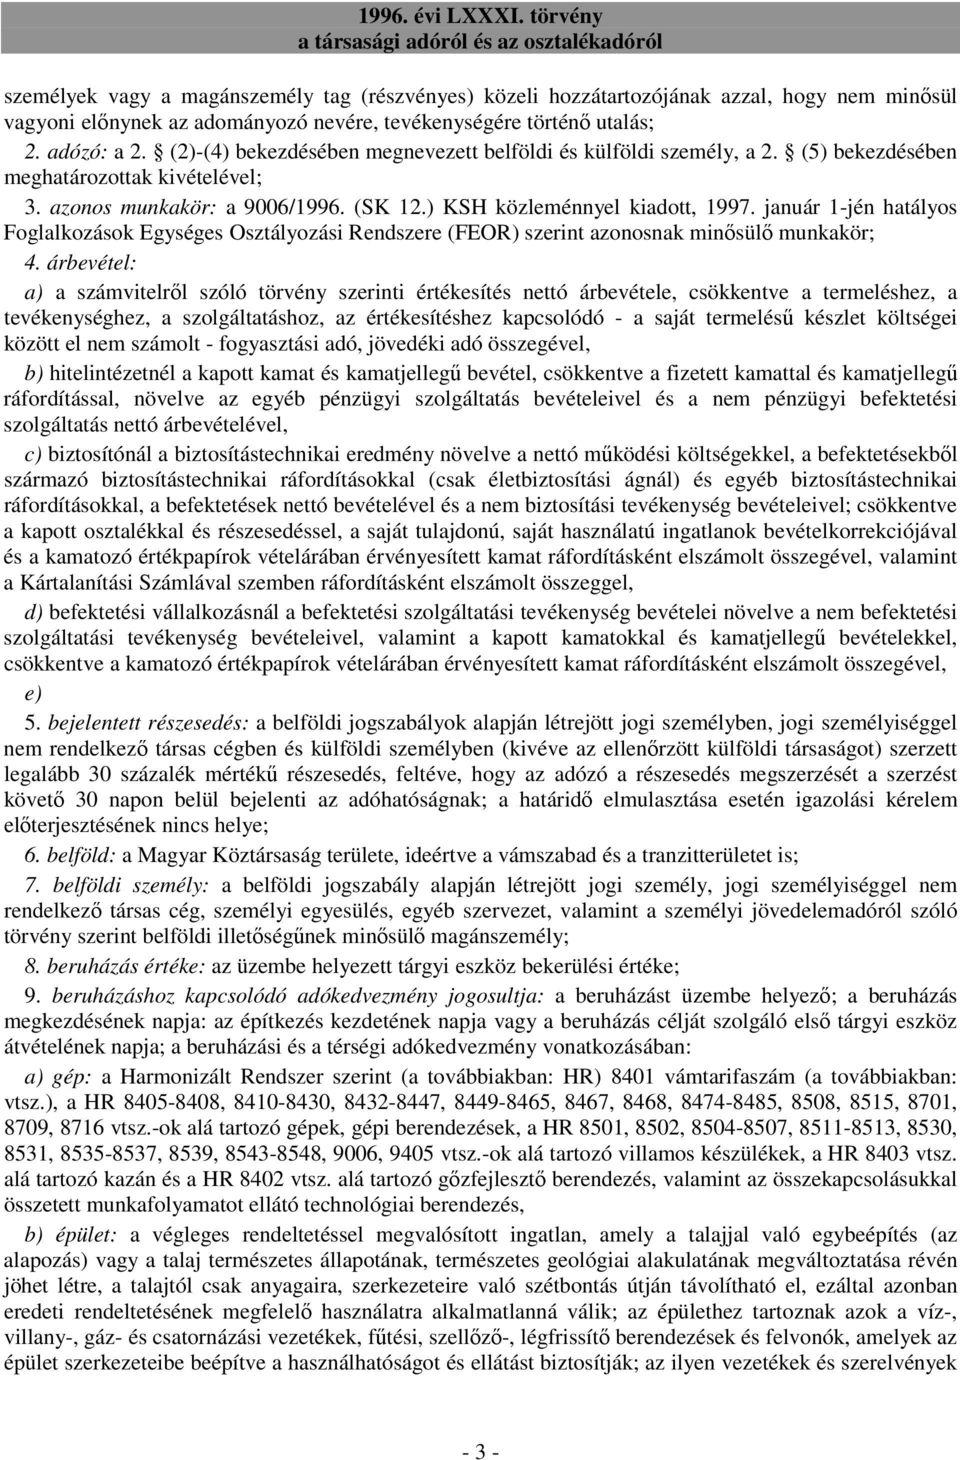 január 1-jén hatályos Foglalkozások Egységes Osztályozási Rendszere (FEOR) szerint azonosnak minısülı munkakör; 4.